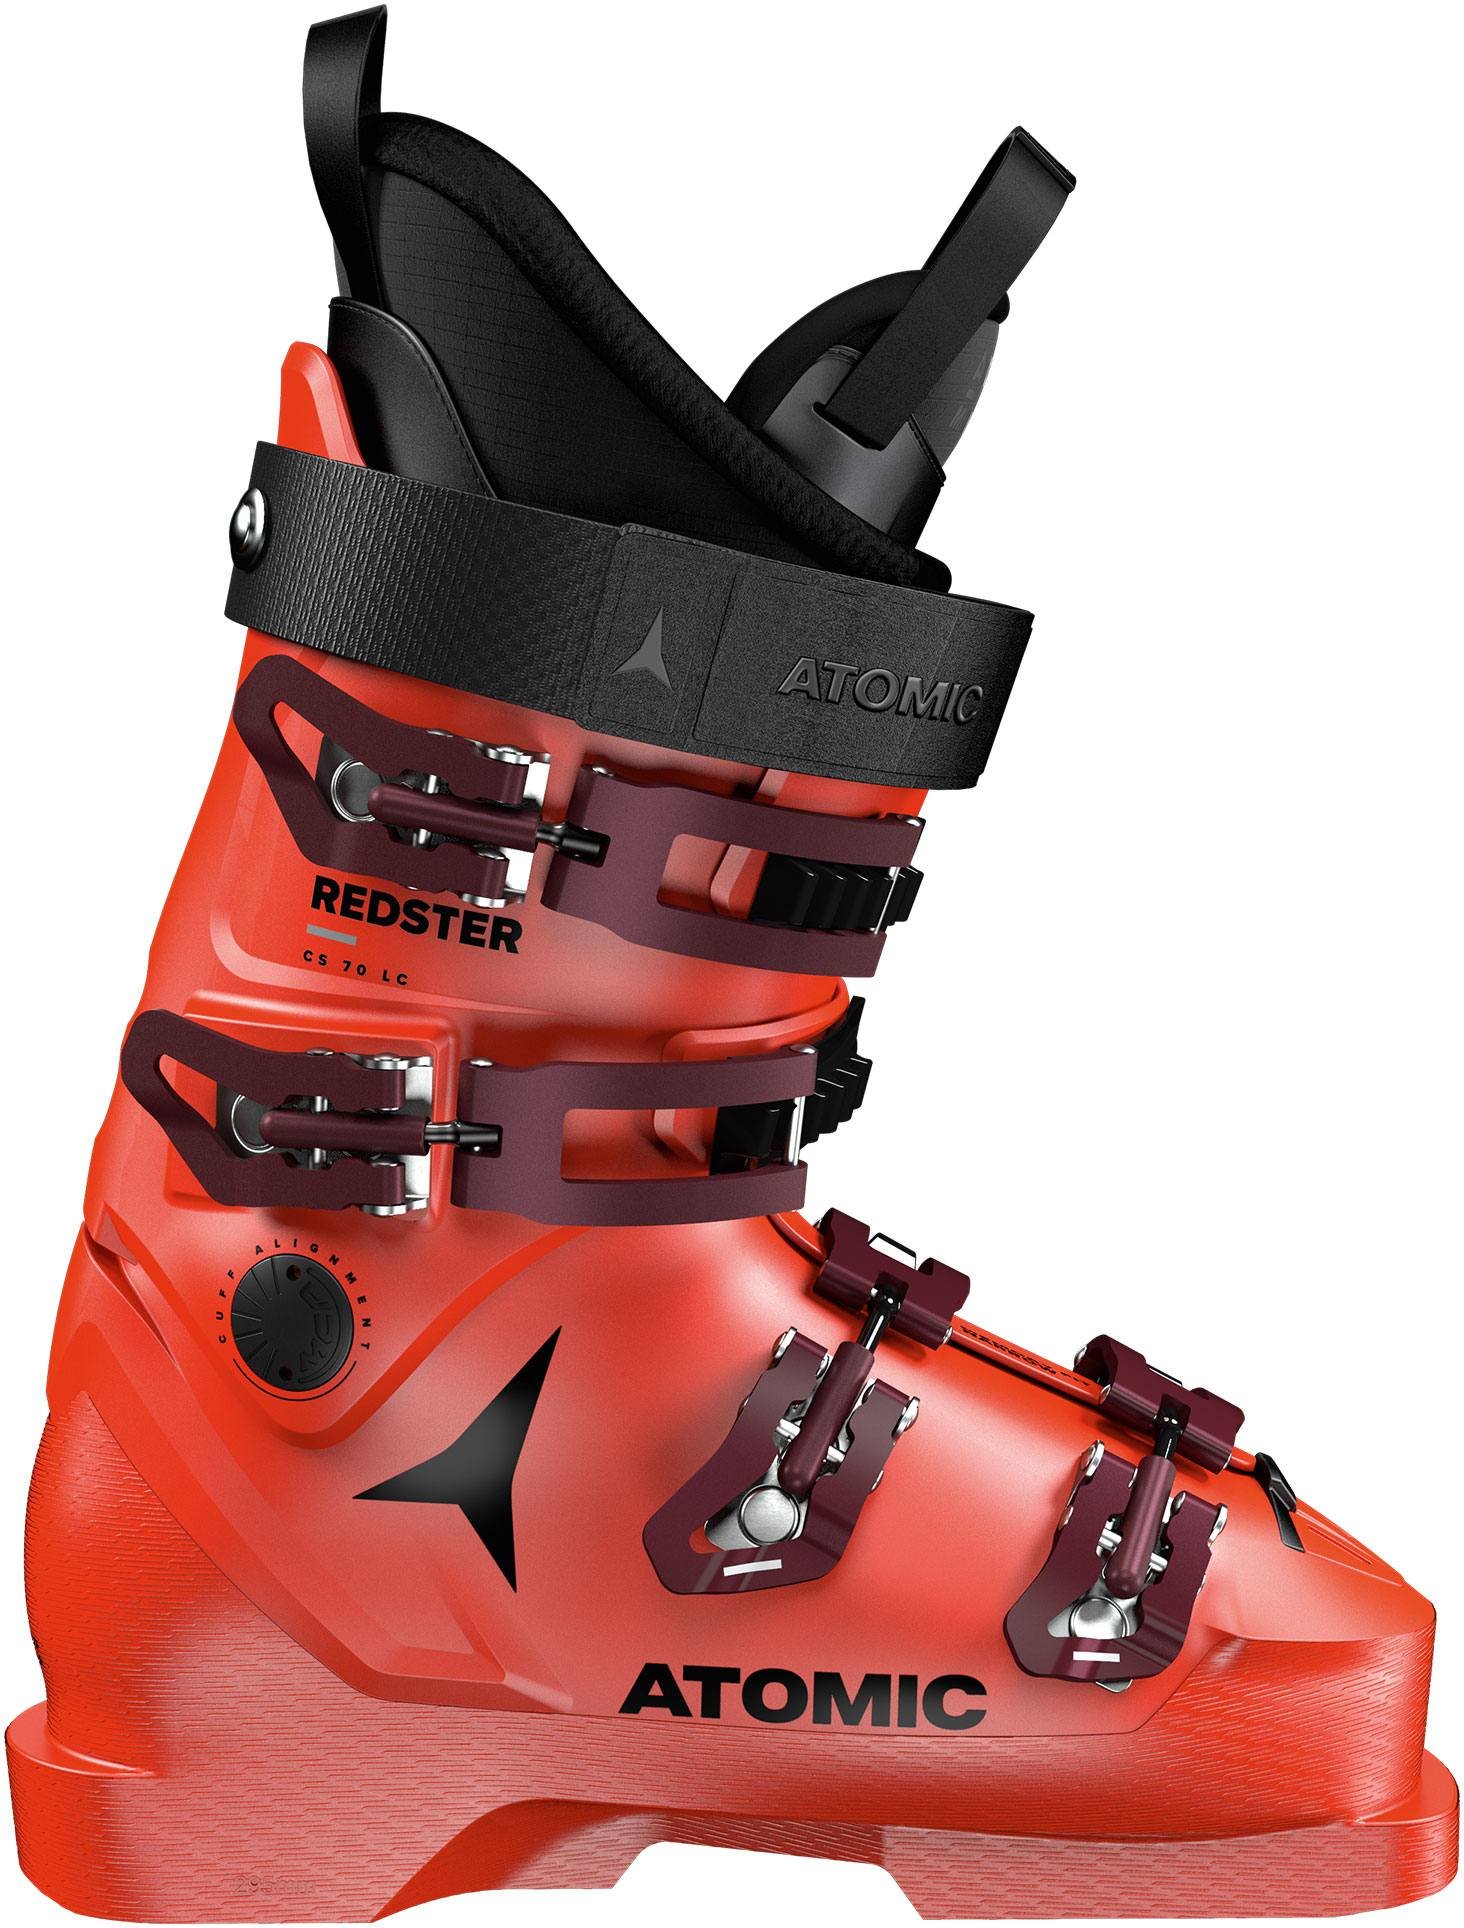 Atomic Redster CS 70 LC | Ski og utstyr